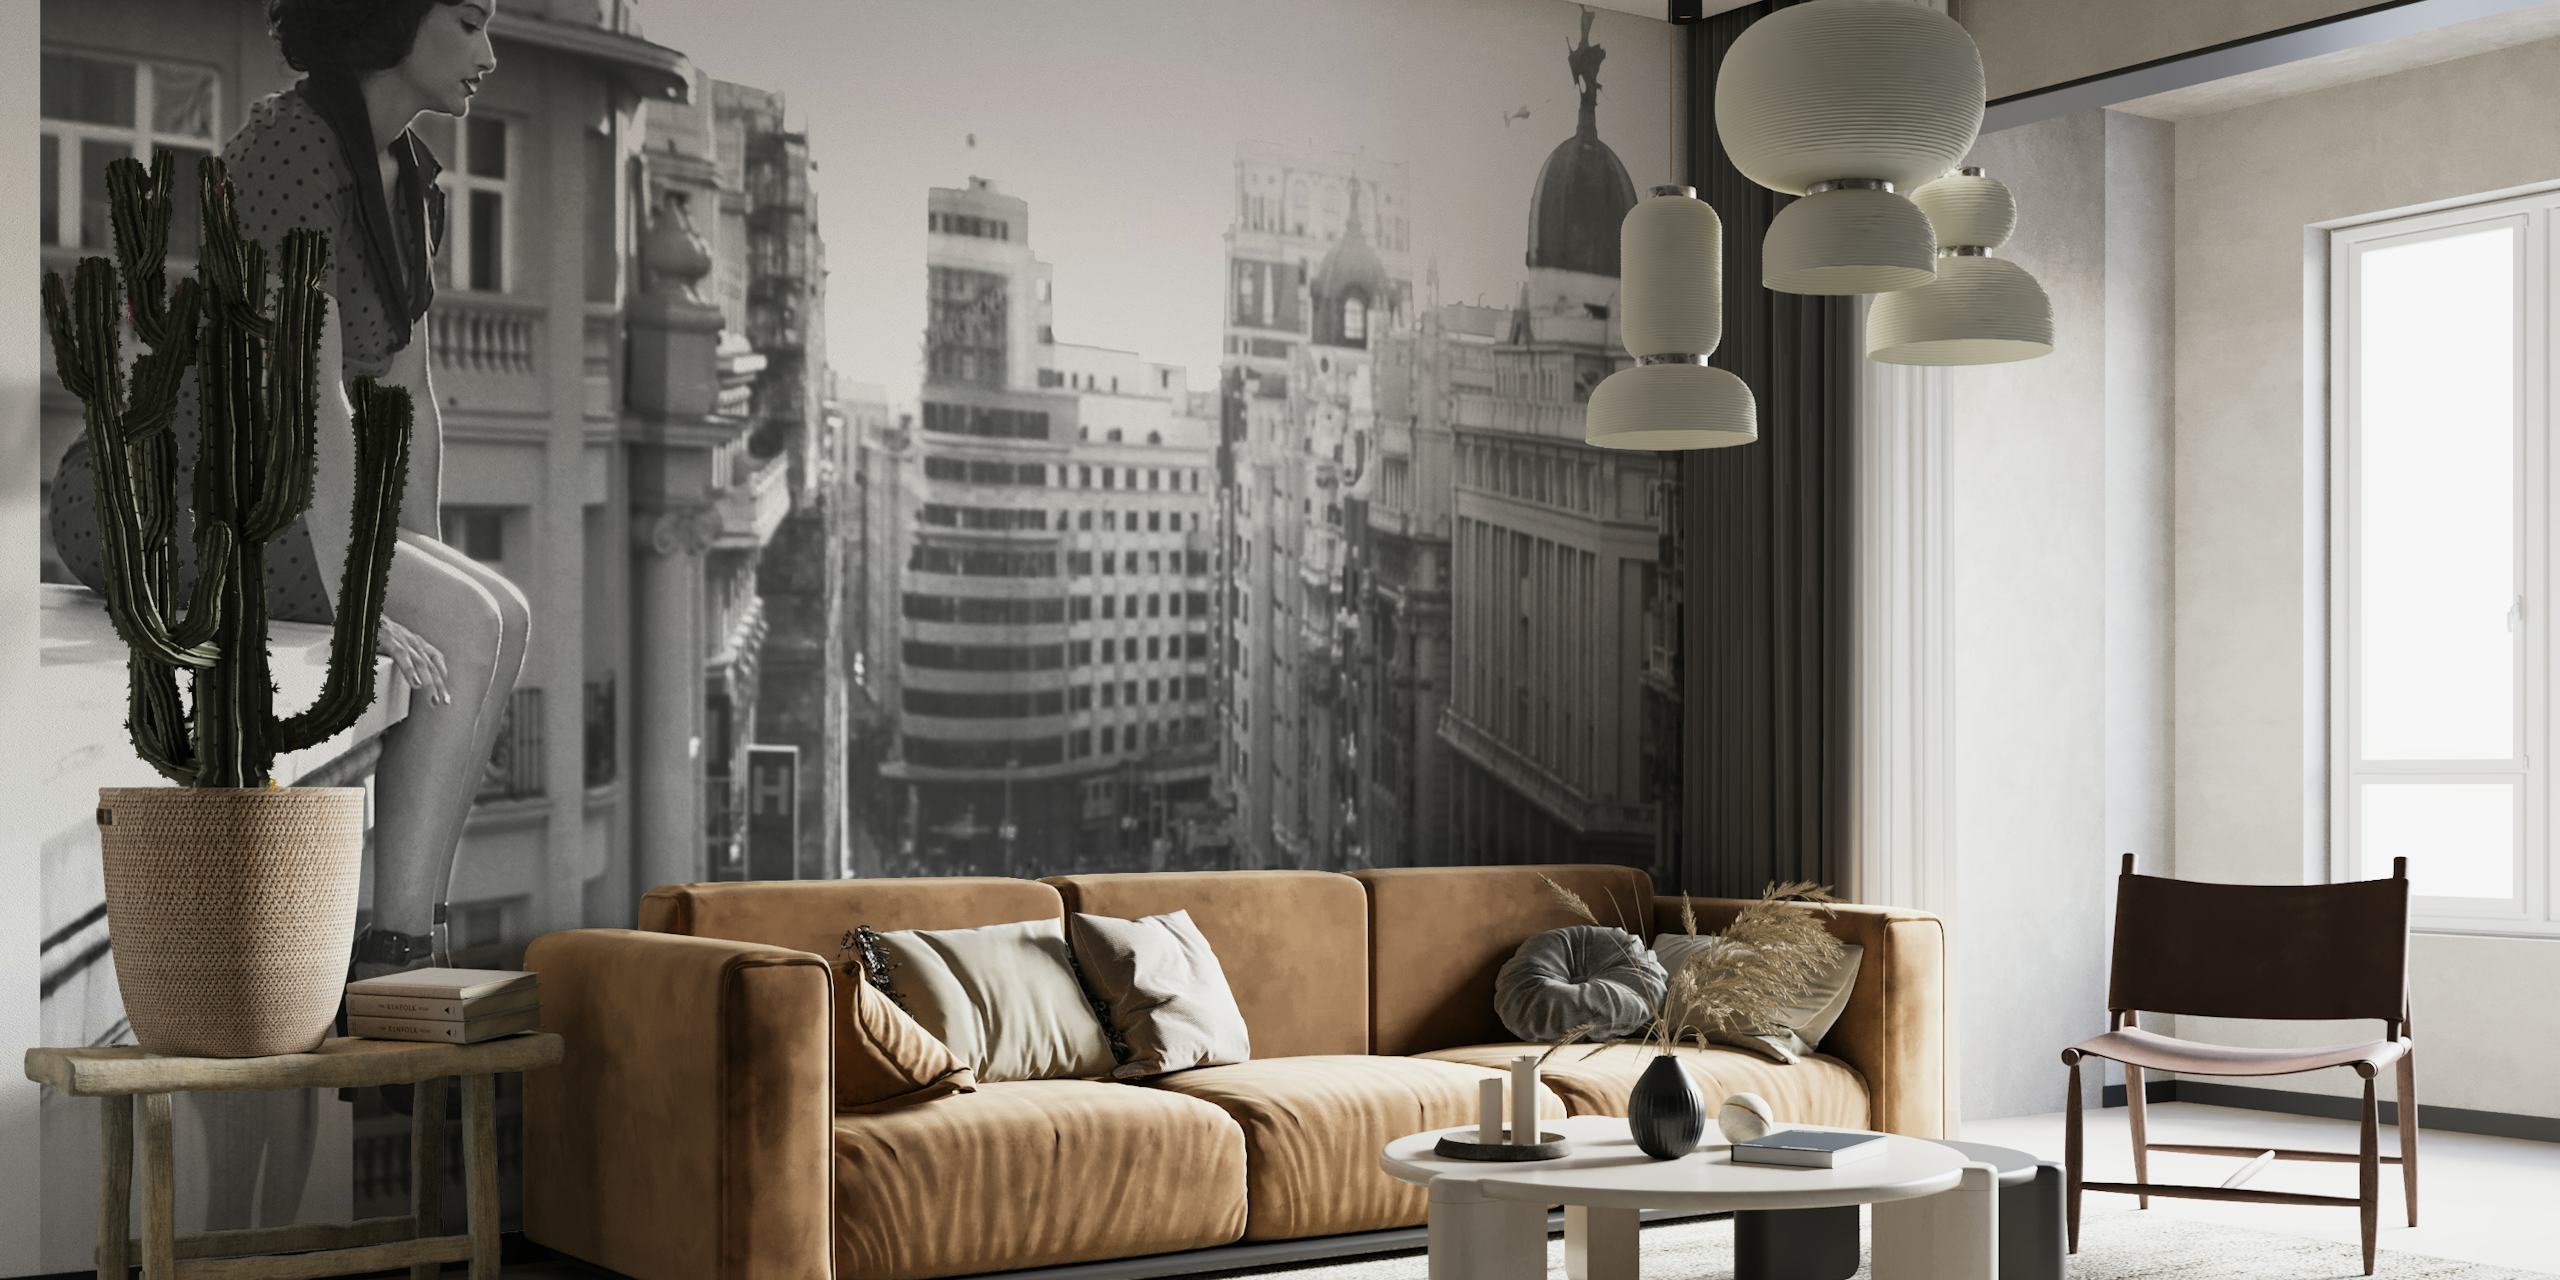 Murale in bianco e nero di un paesaggio urbano che raffigura l'energia urbana e gli edifici storici di Madrid.